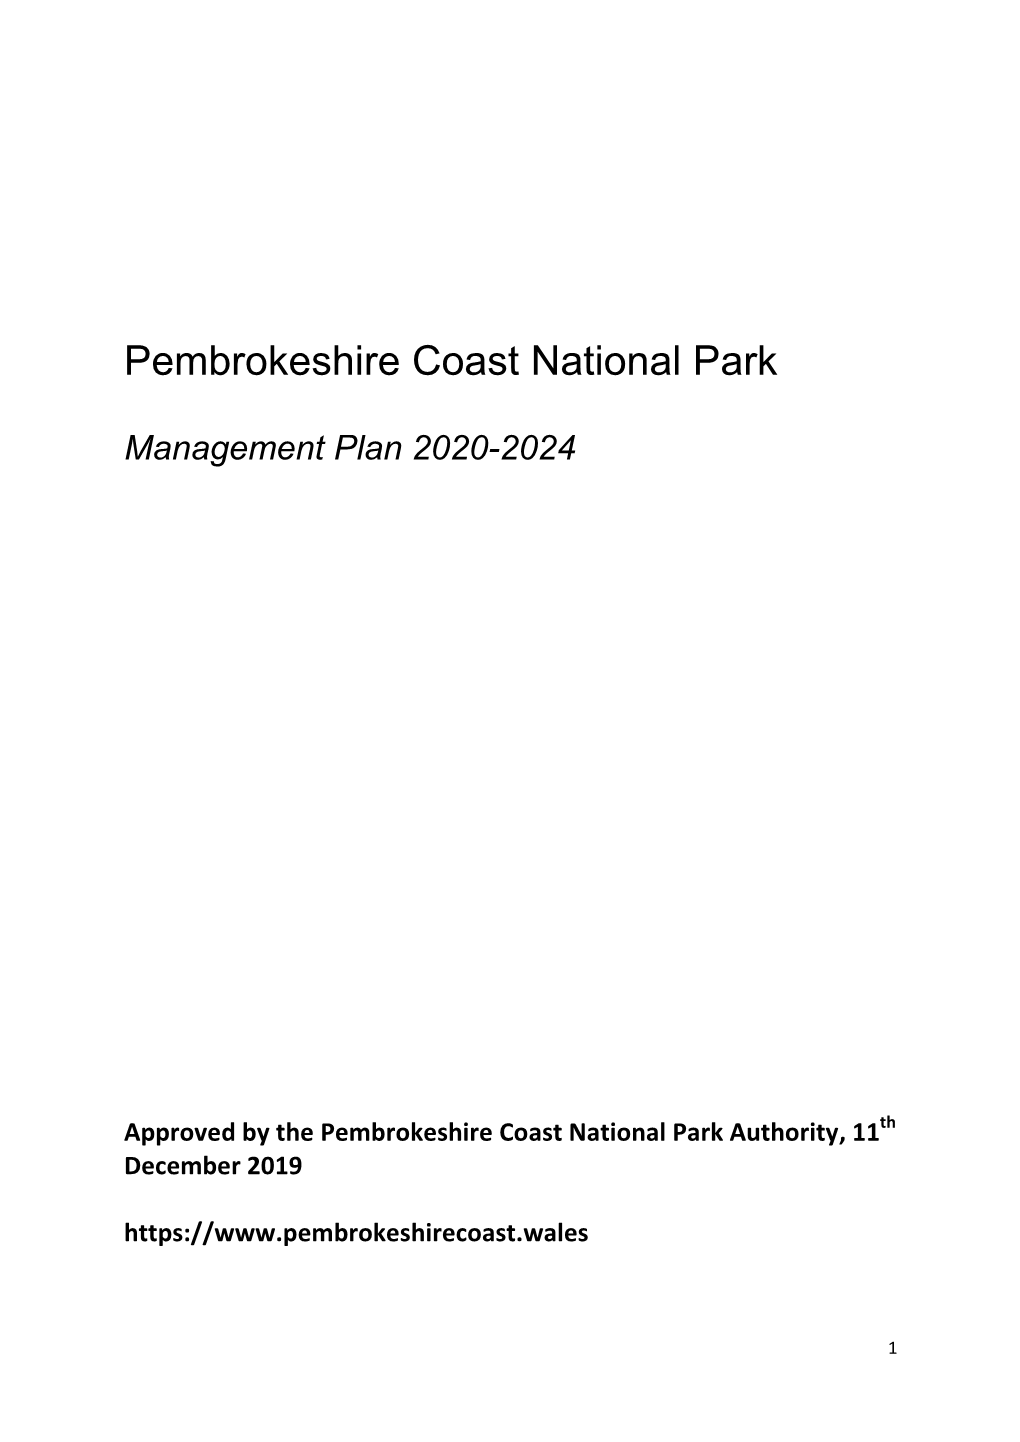 Pembrokeshire Coast National Park Management Plan 2020-2024